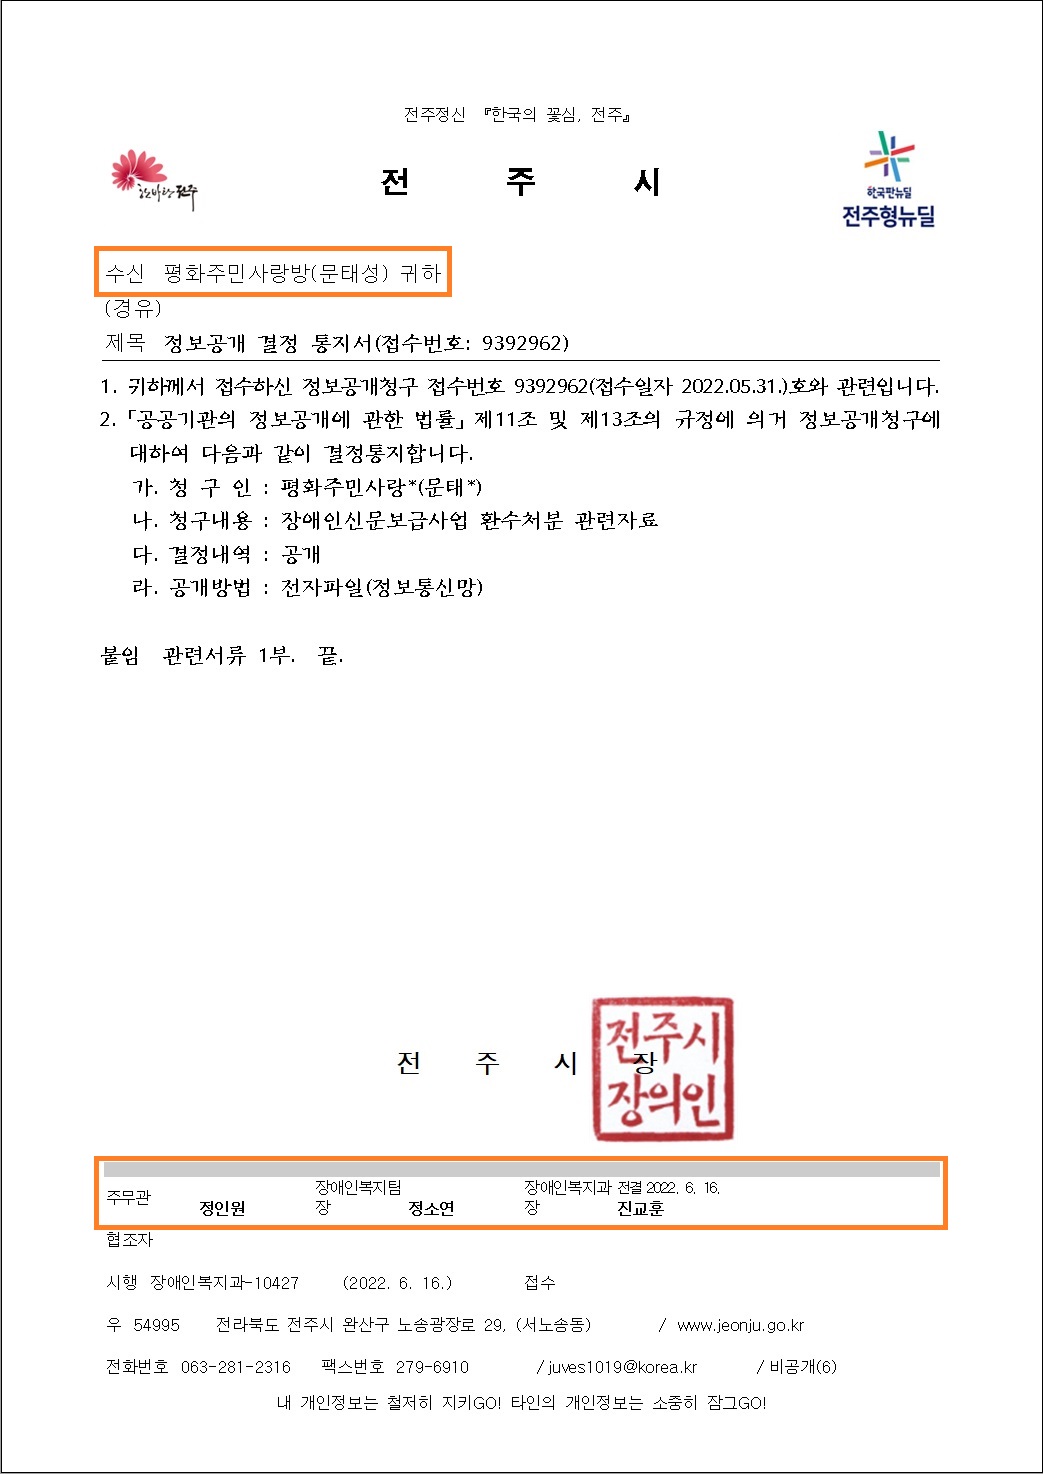 전주시 장애인복지과-10427(2022.6.16)호_정보공개 결정 통지서.jpg